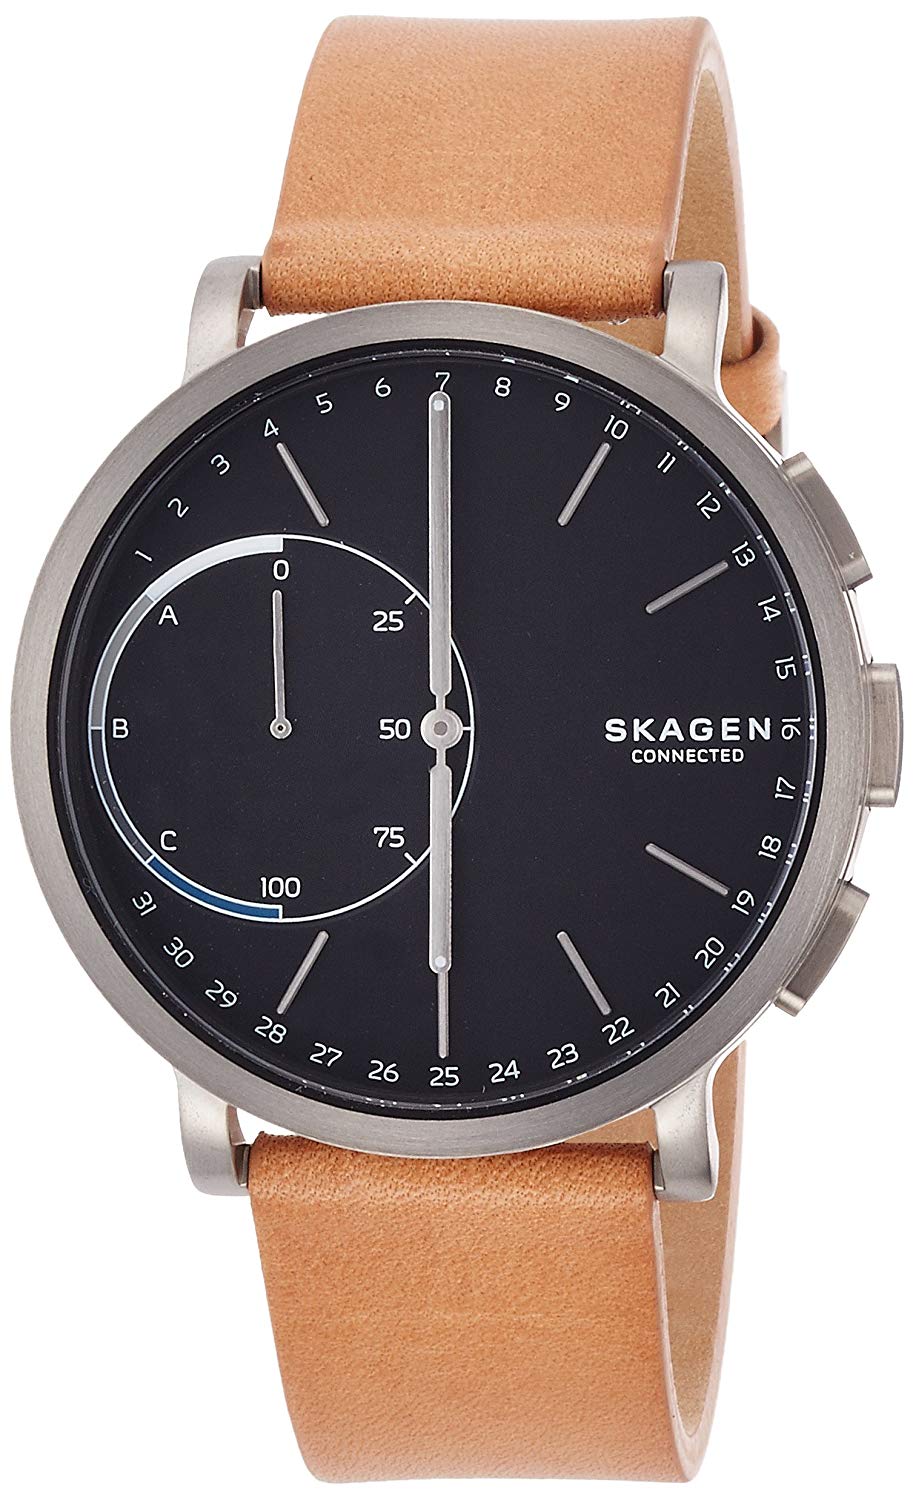 SKAGEN(スカーゲン) 腕時計 HAGEN CONNECTED